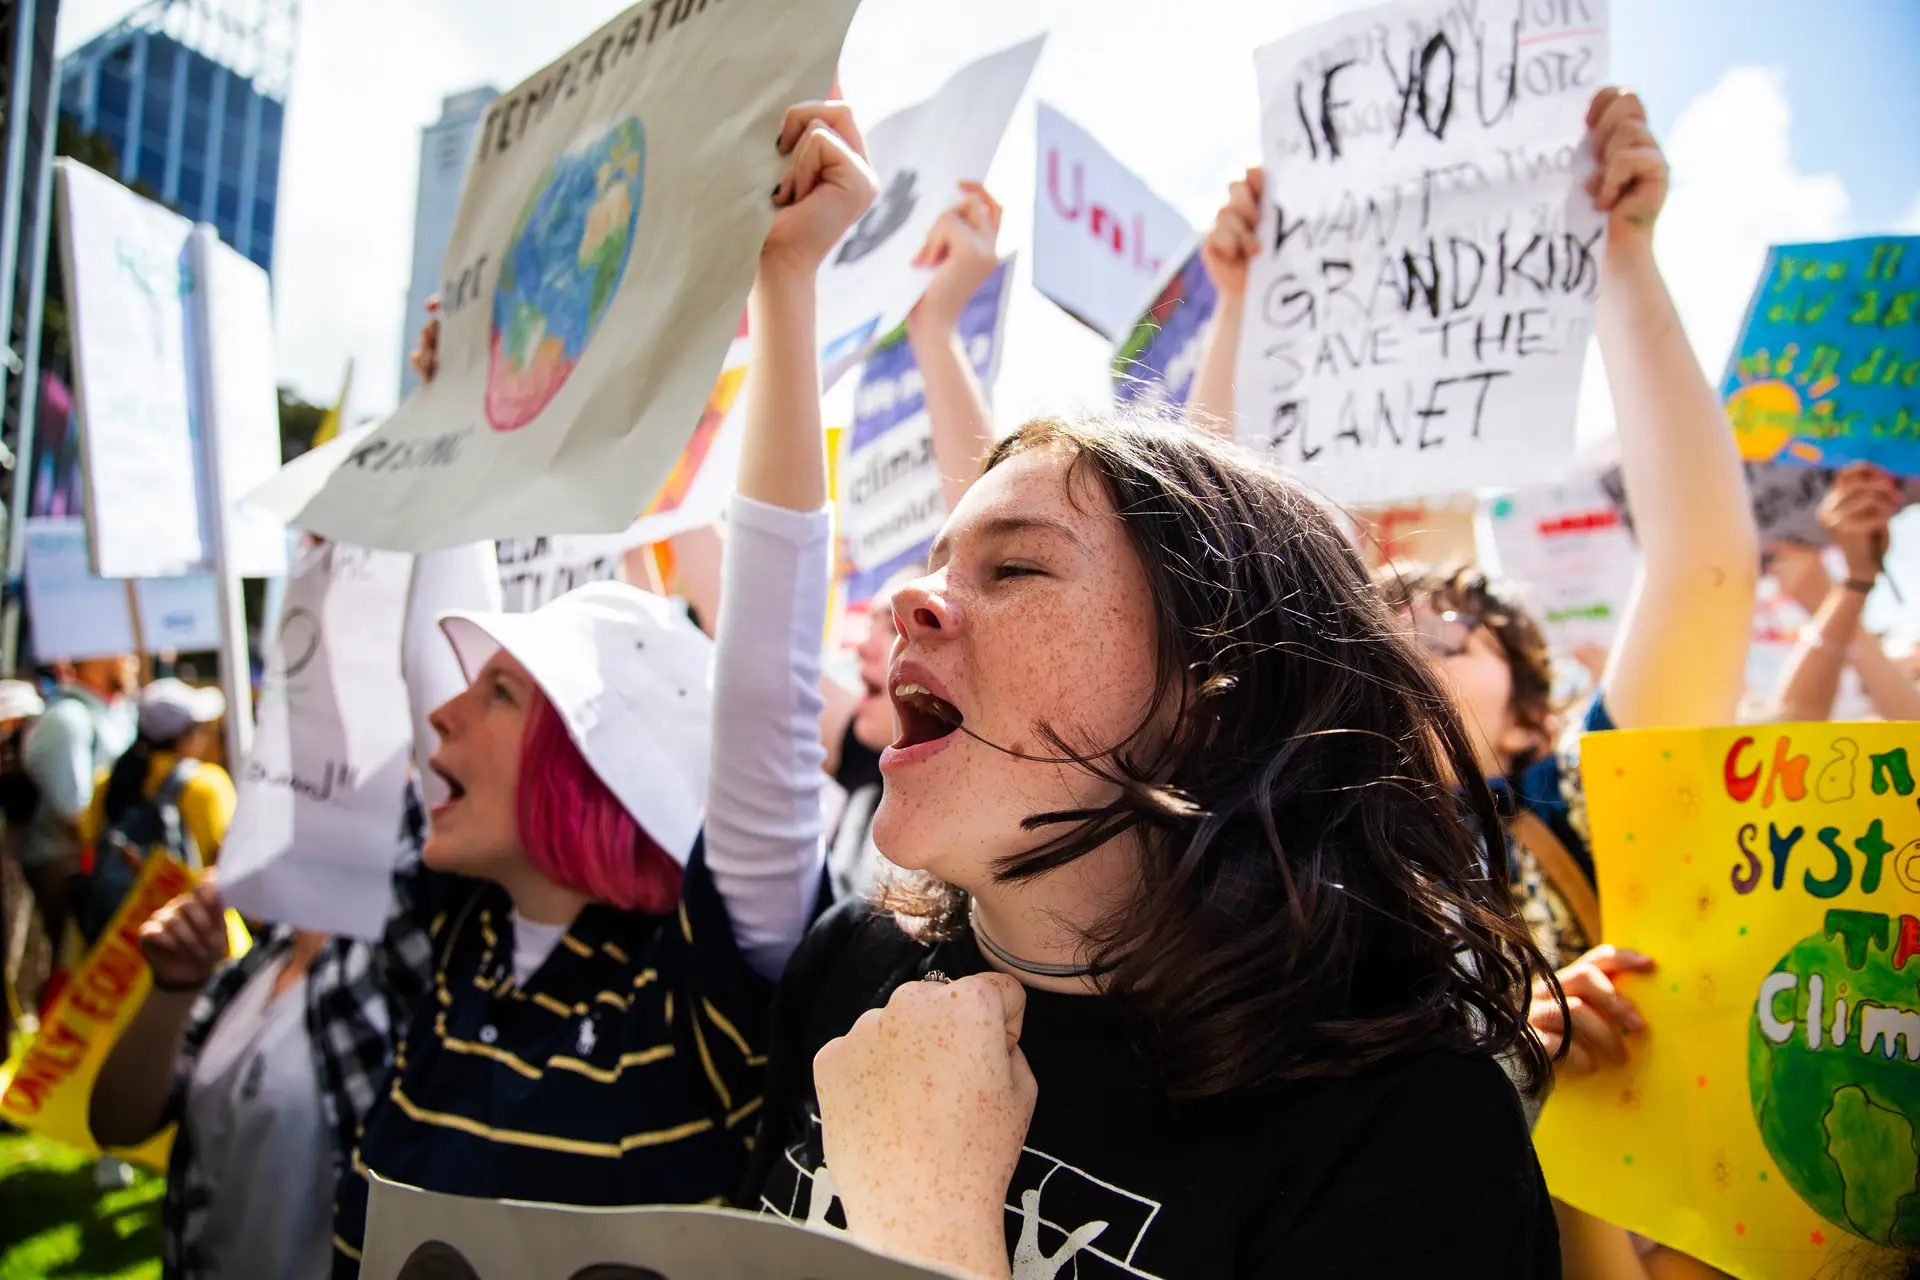 Ativistas pelo clima foram condenados por “desobediência”. 5 perguntas e respostas sobre a sentença, o movimento e o que vão fazer a seguir